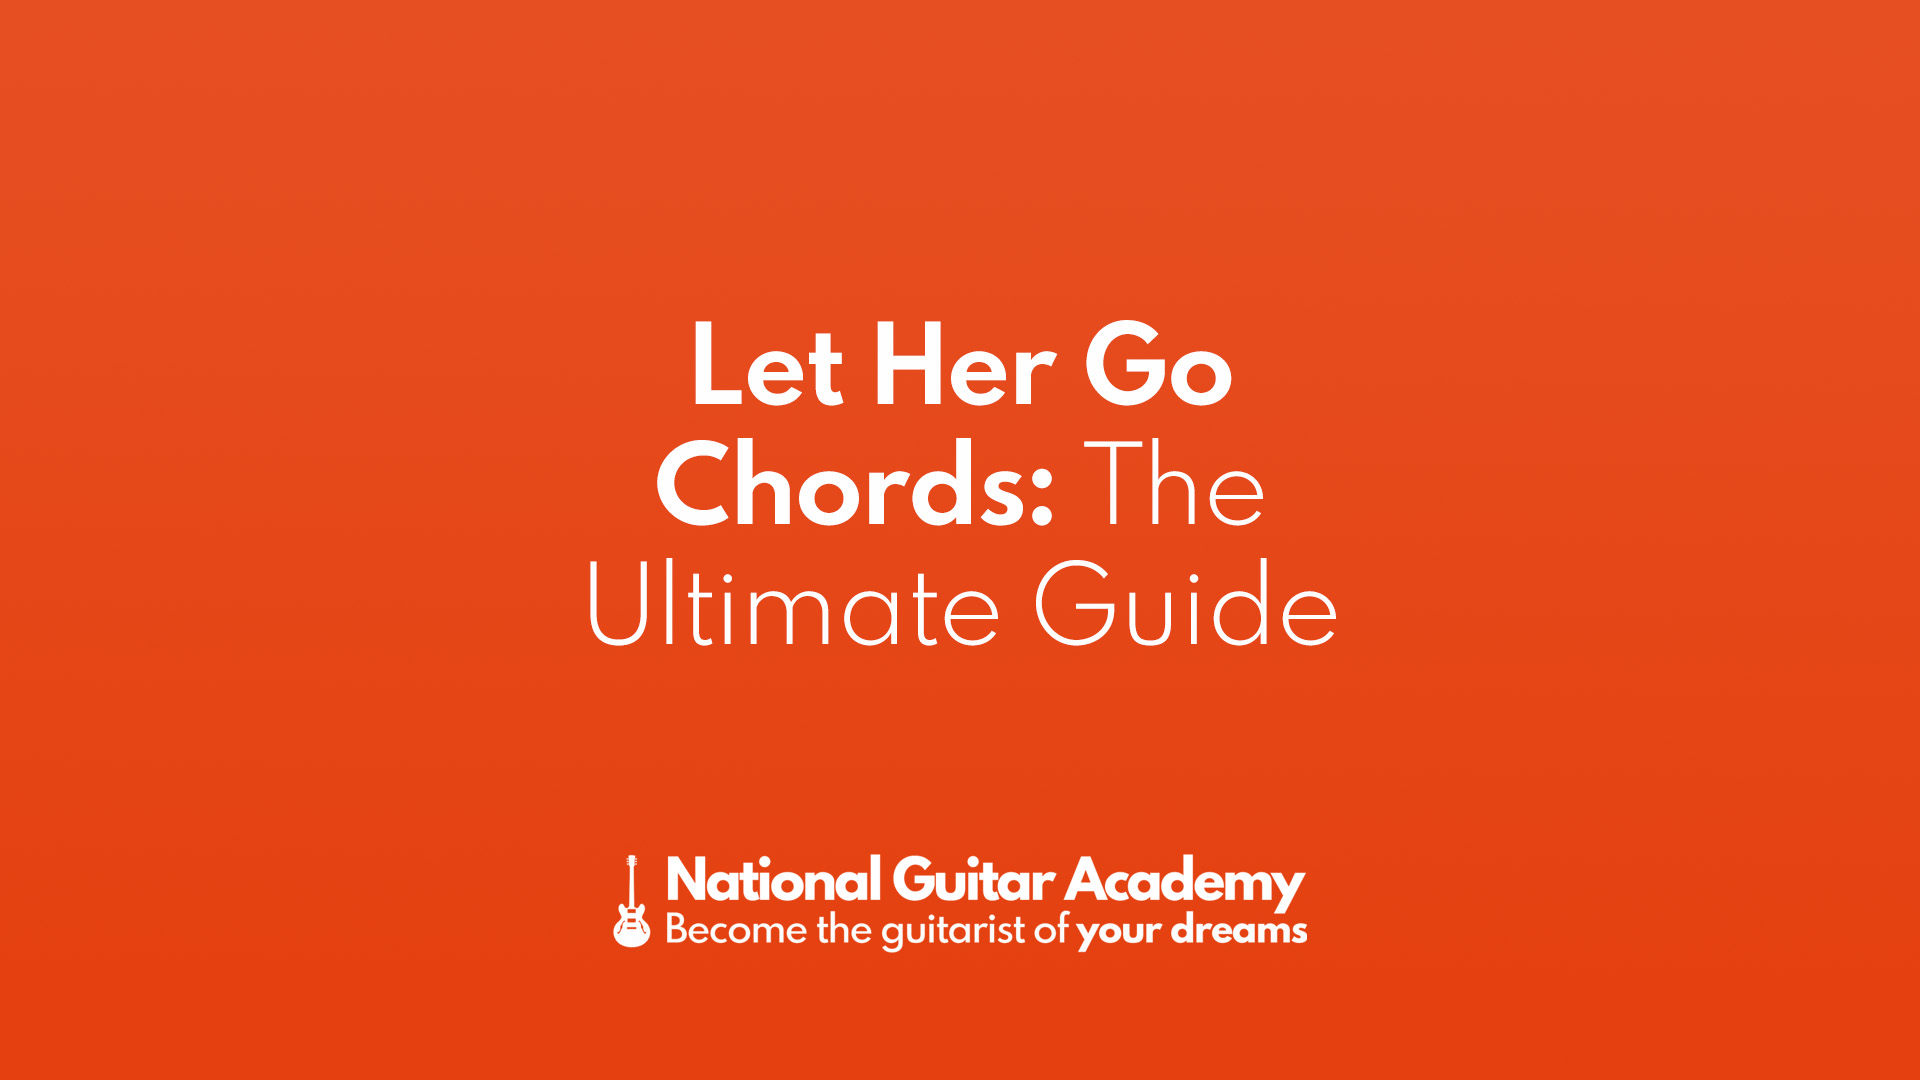 Let her go chords